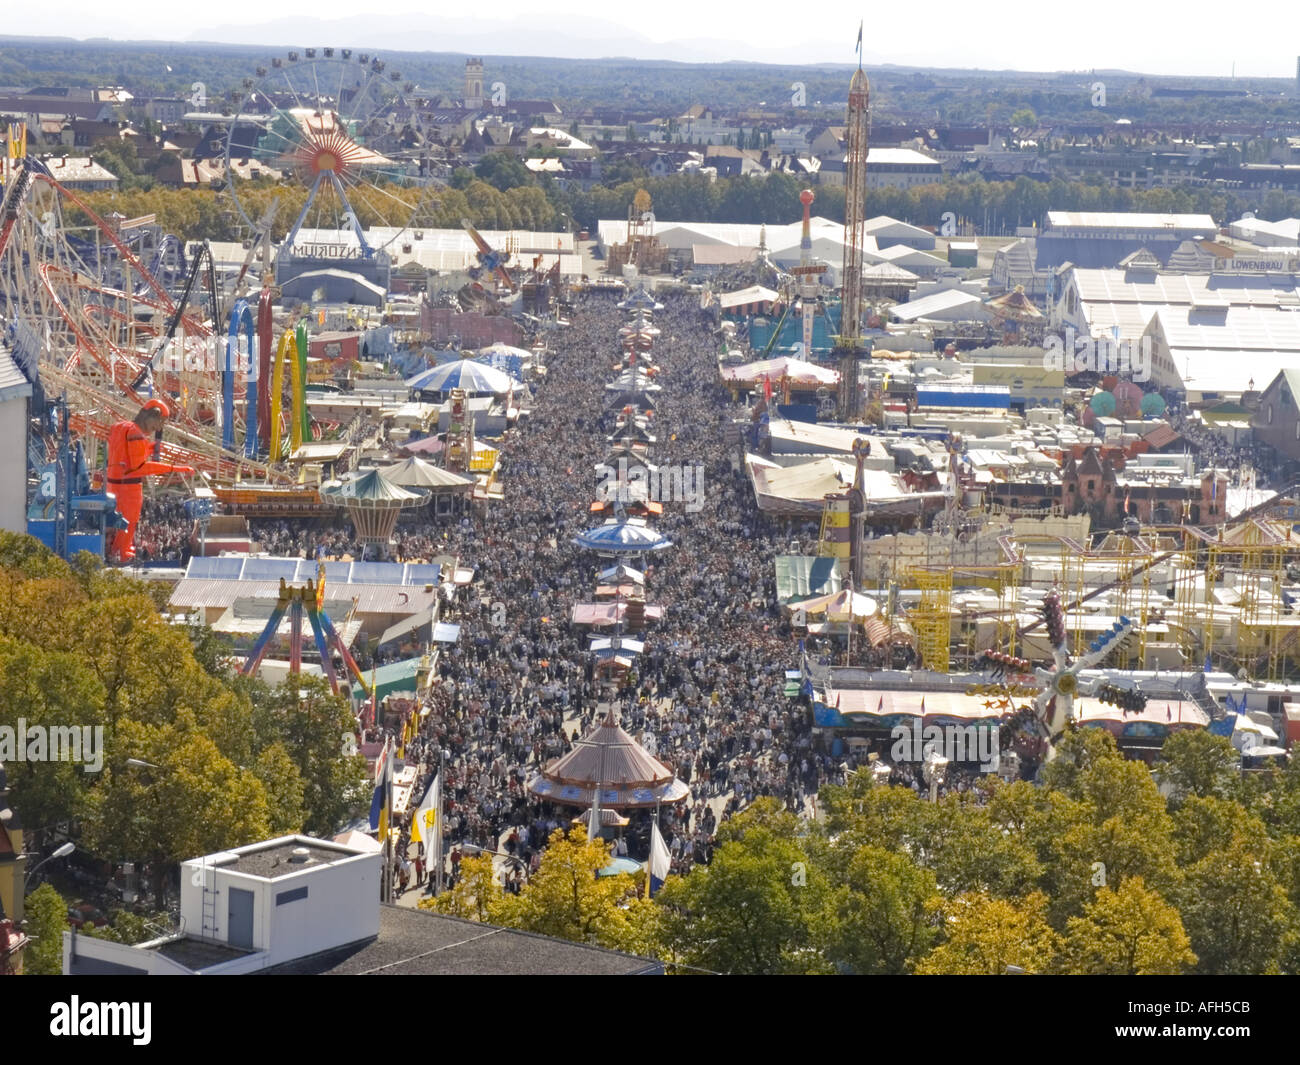 Europa Germania festa della birra Oktoberfest fiera del divertimento vista aerea da san Paolo chiesa Foto Stock